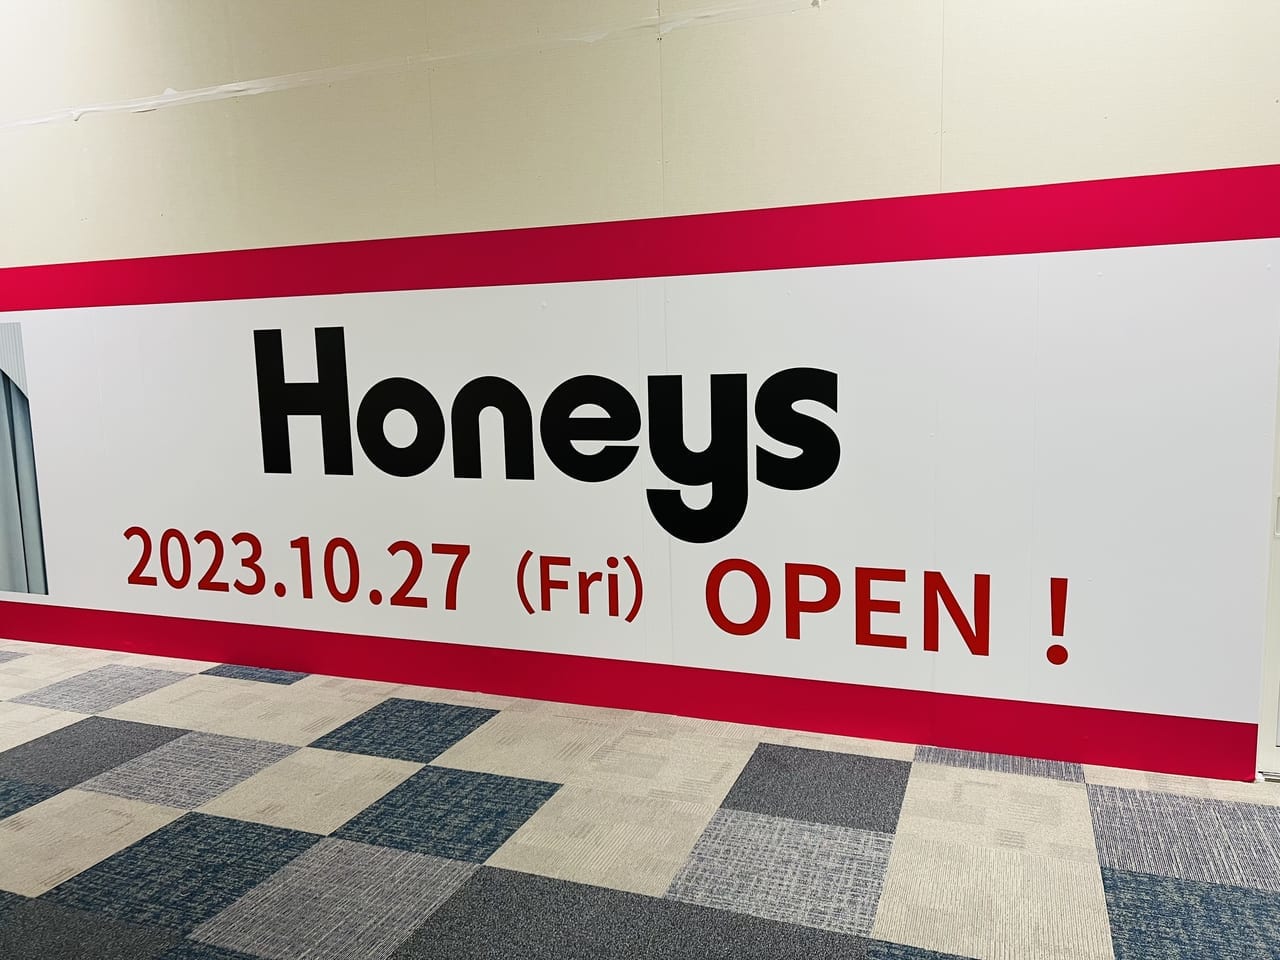 2023年10月27日オープン予定の「Honeys イオンモール高知店」の看板